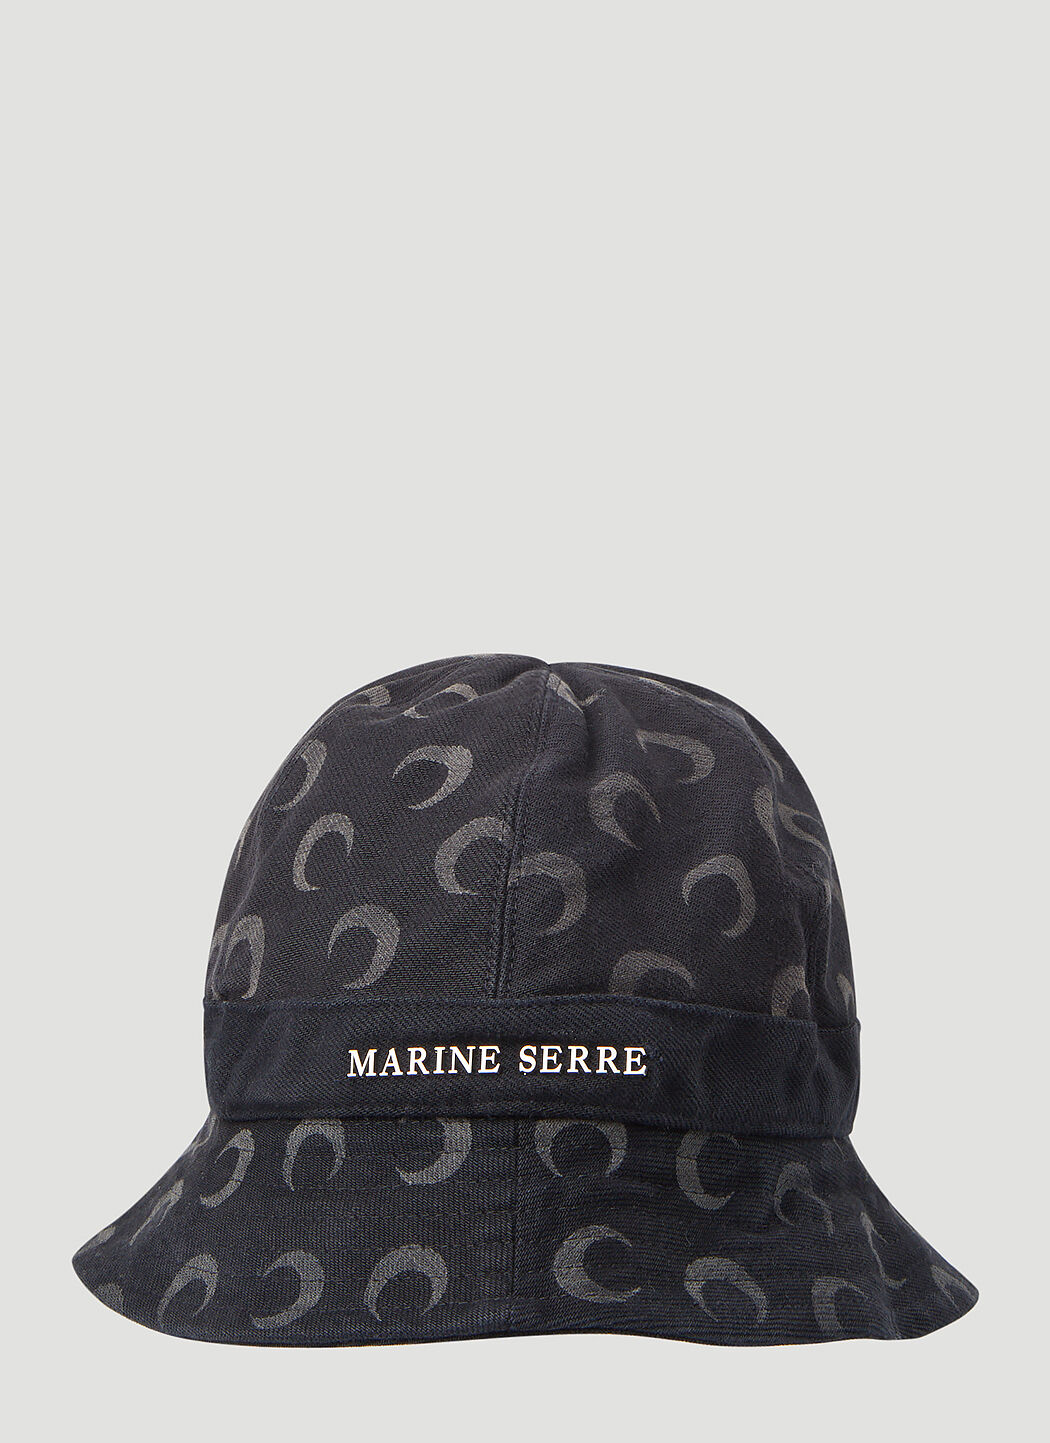 【人気】marine serre バケットハット 帽子